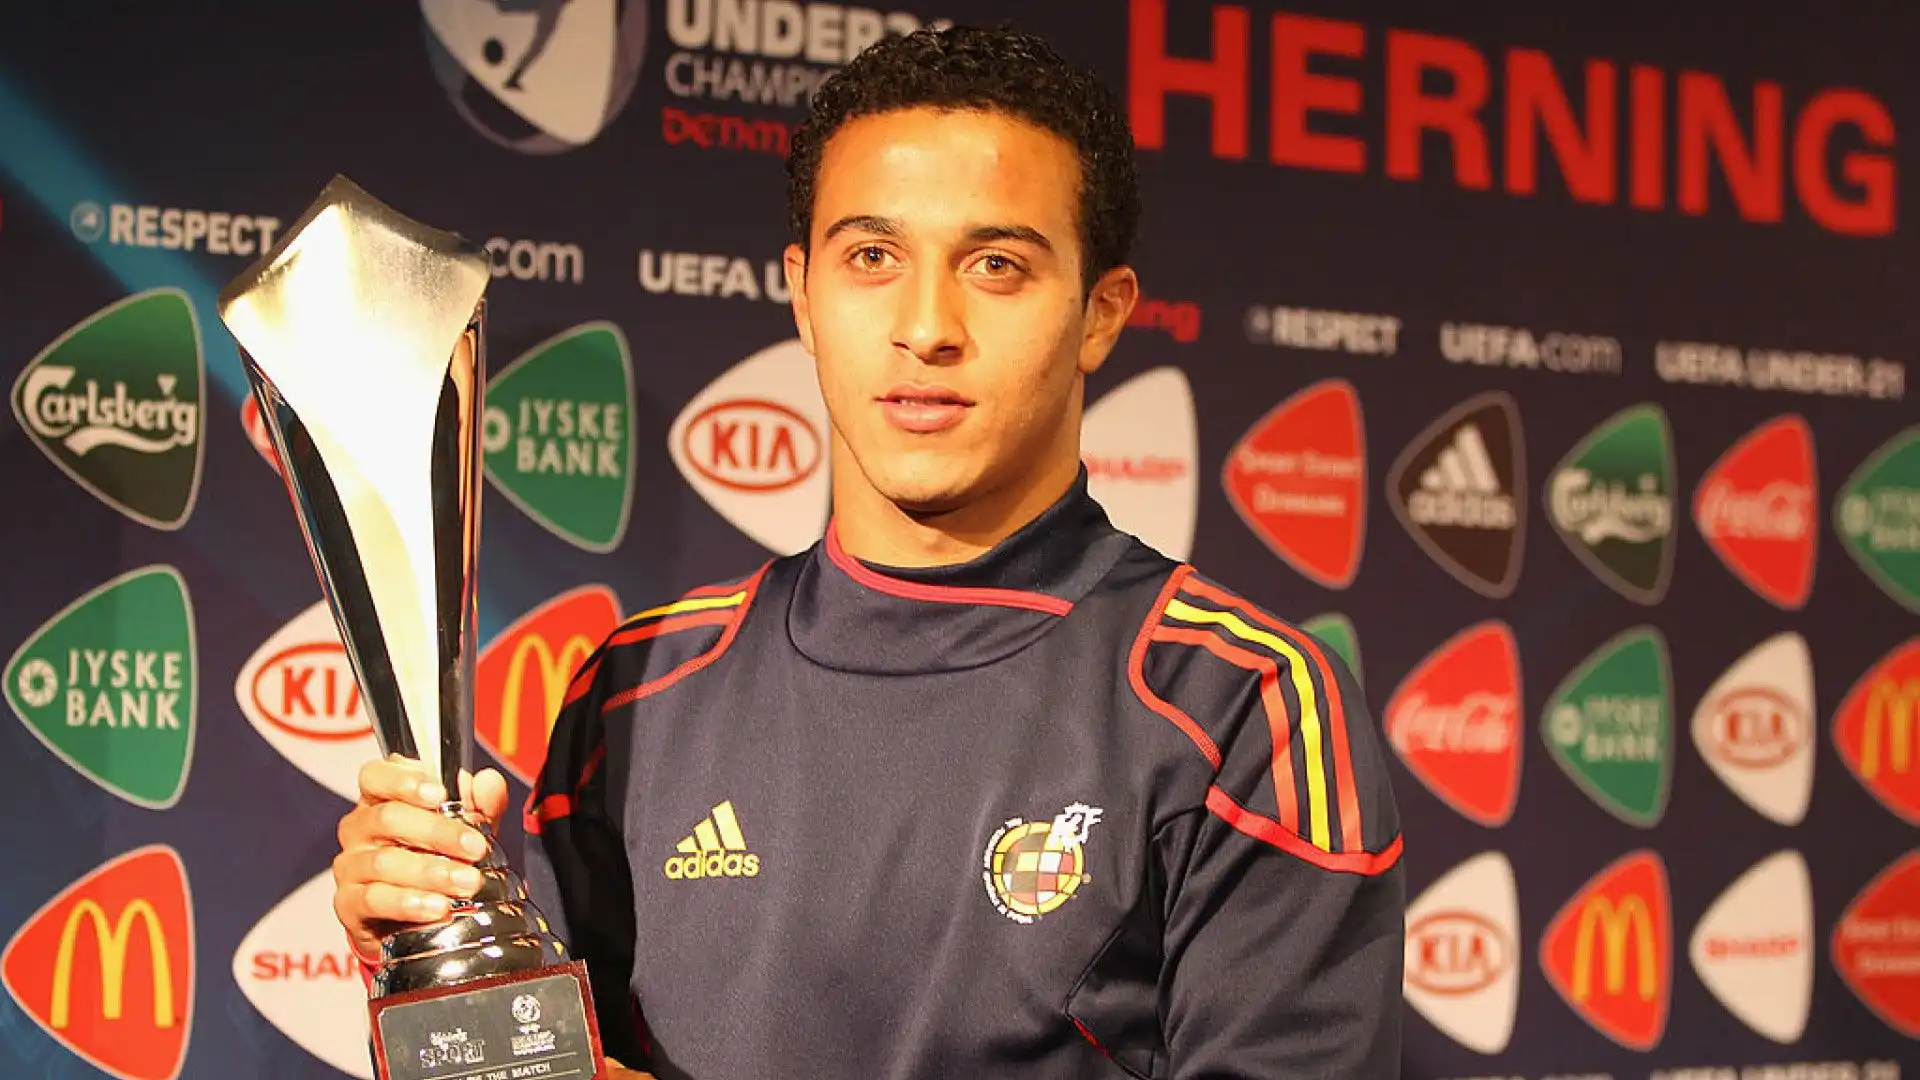 Vince il campionato europeo Under-21 nel 2011